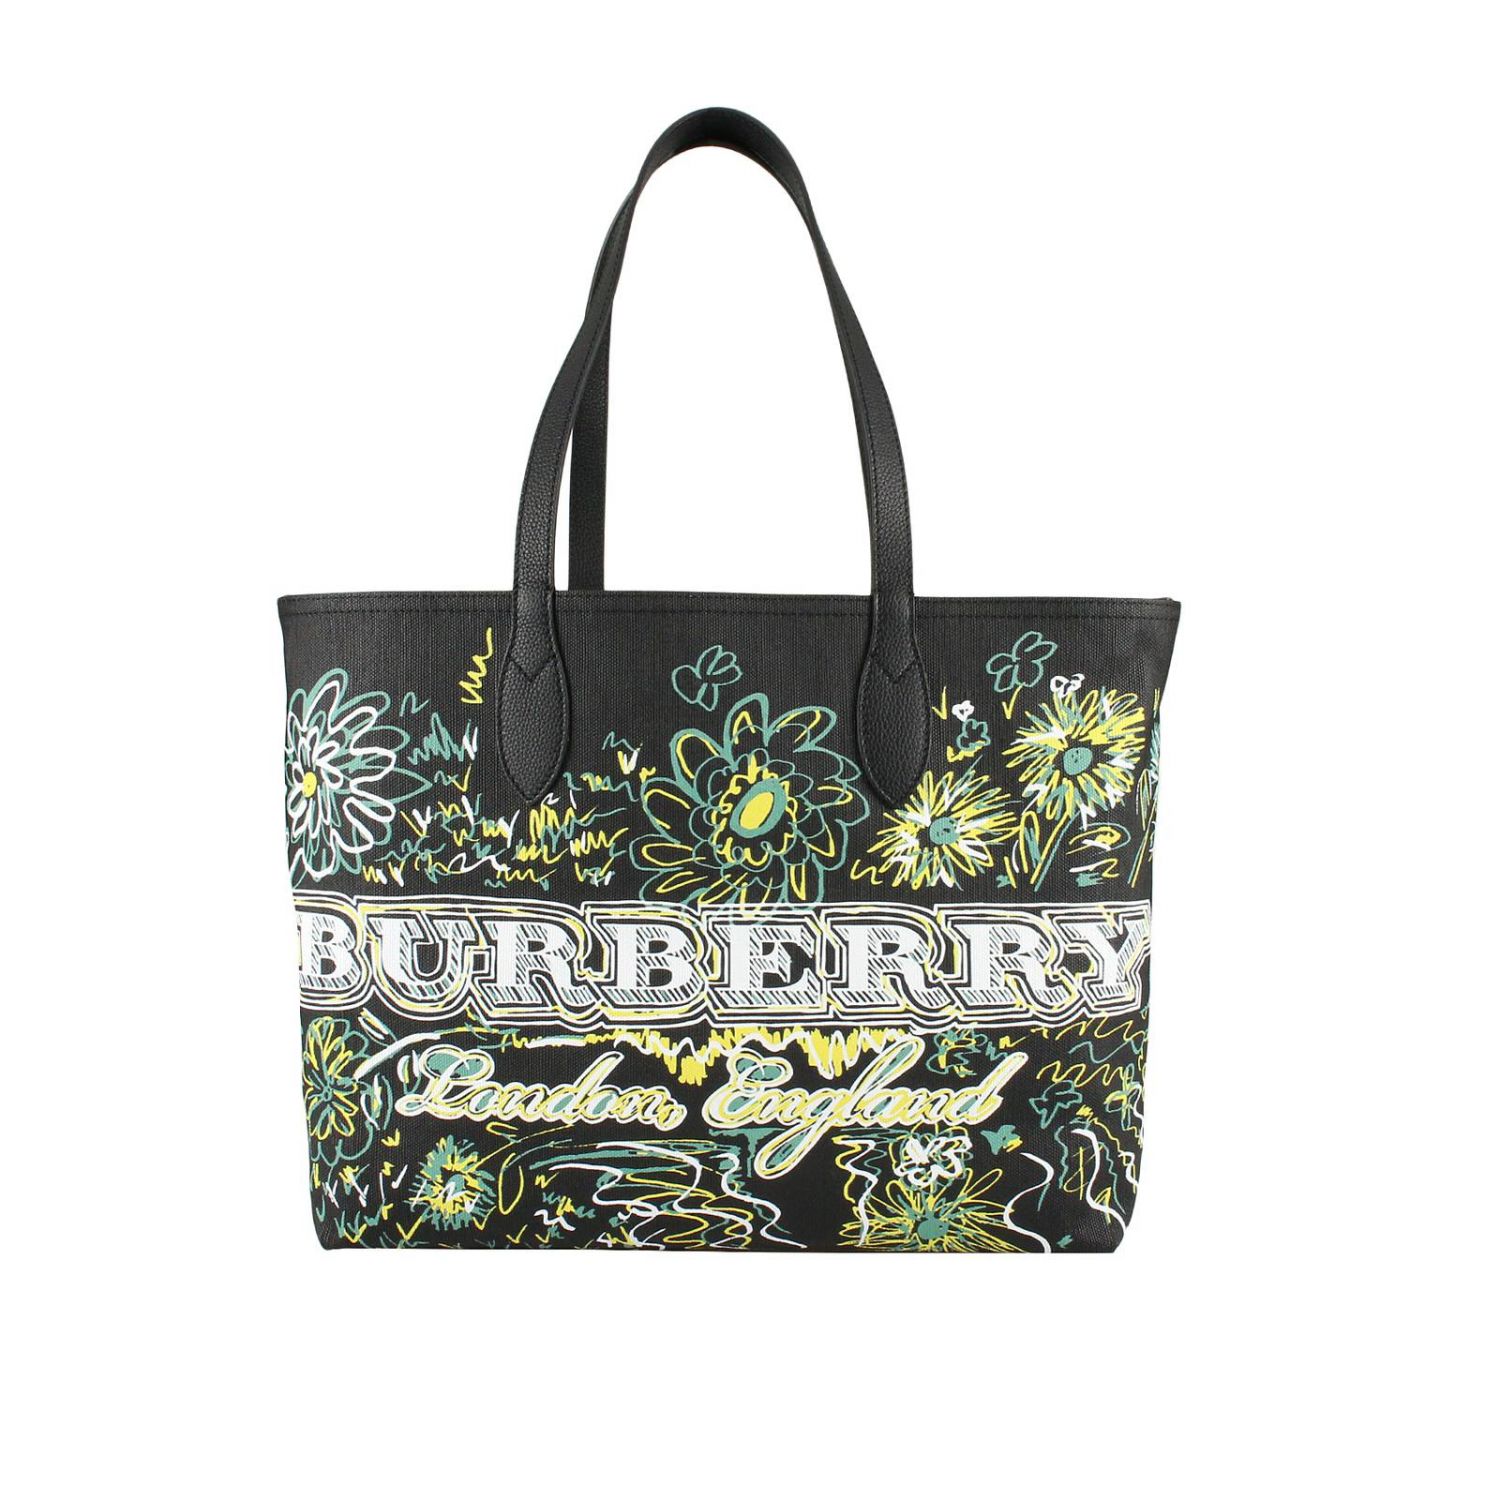 Burberry Outlet: Shoulder bag women - Black | Shoulder Bag Burberry ...